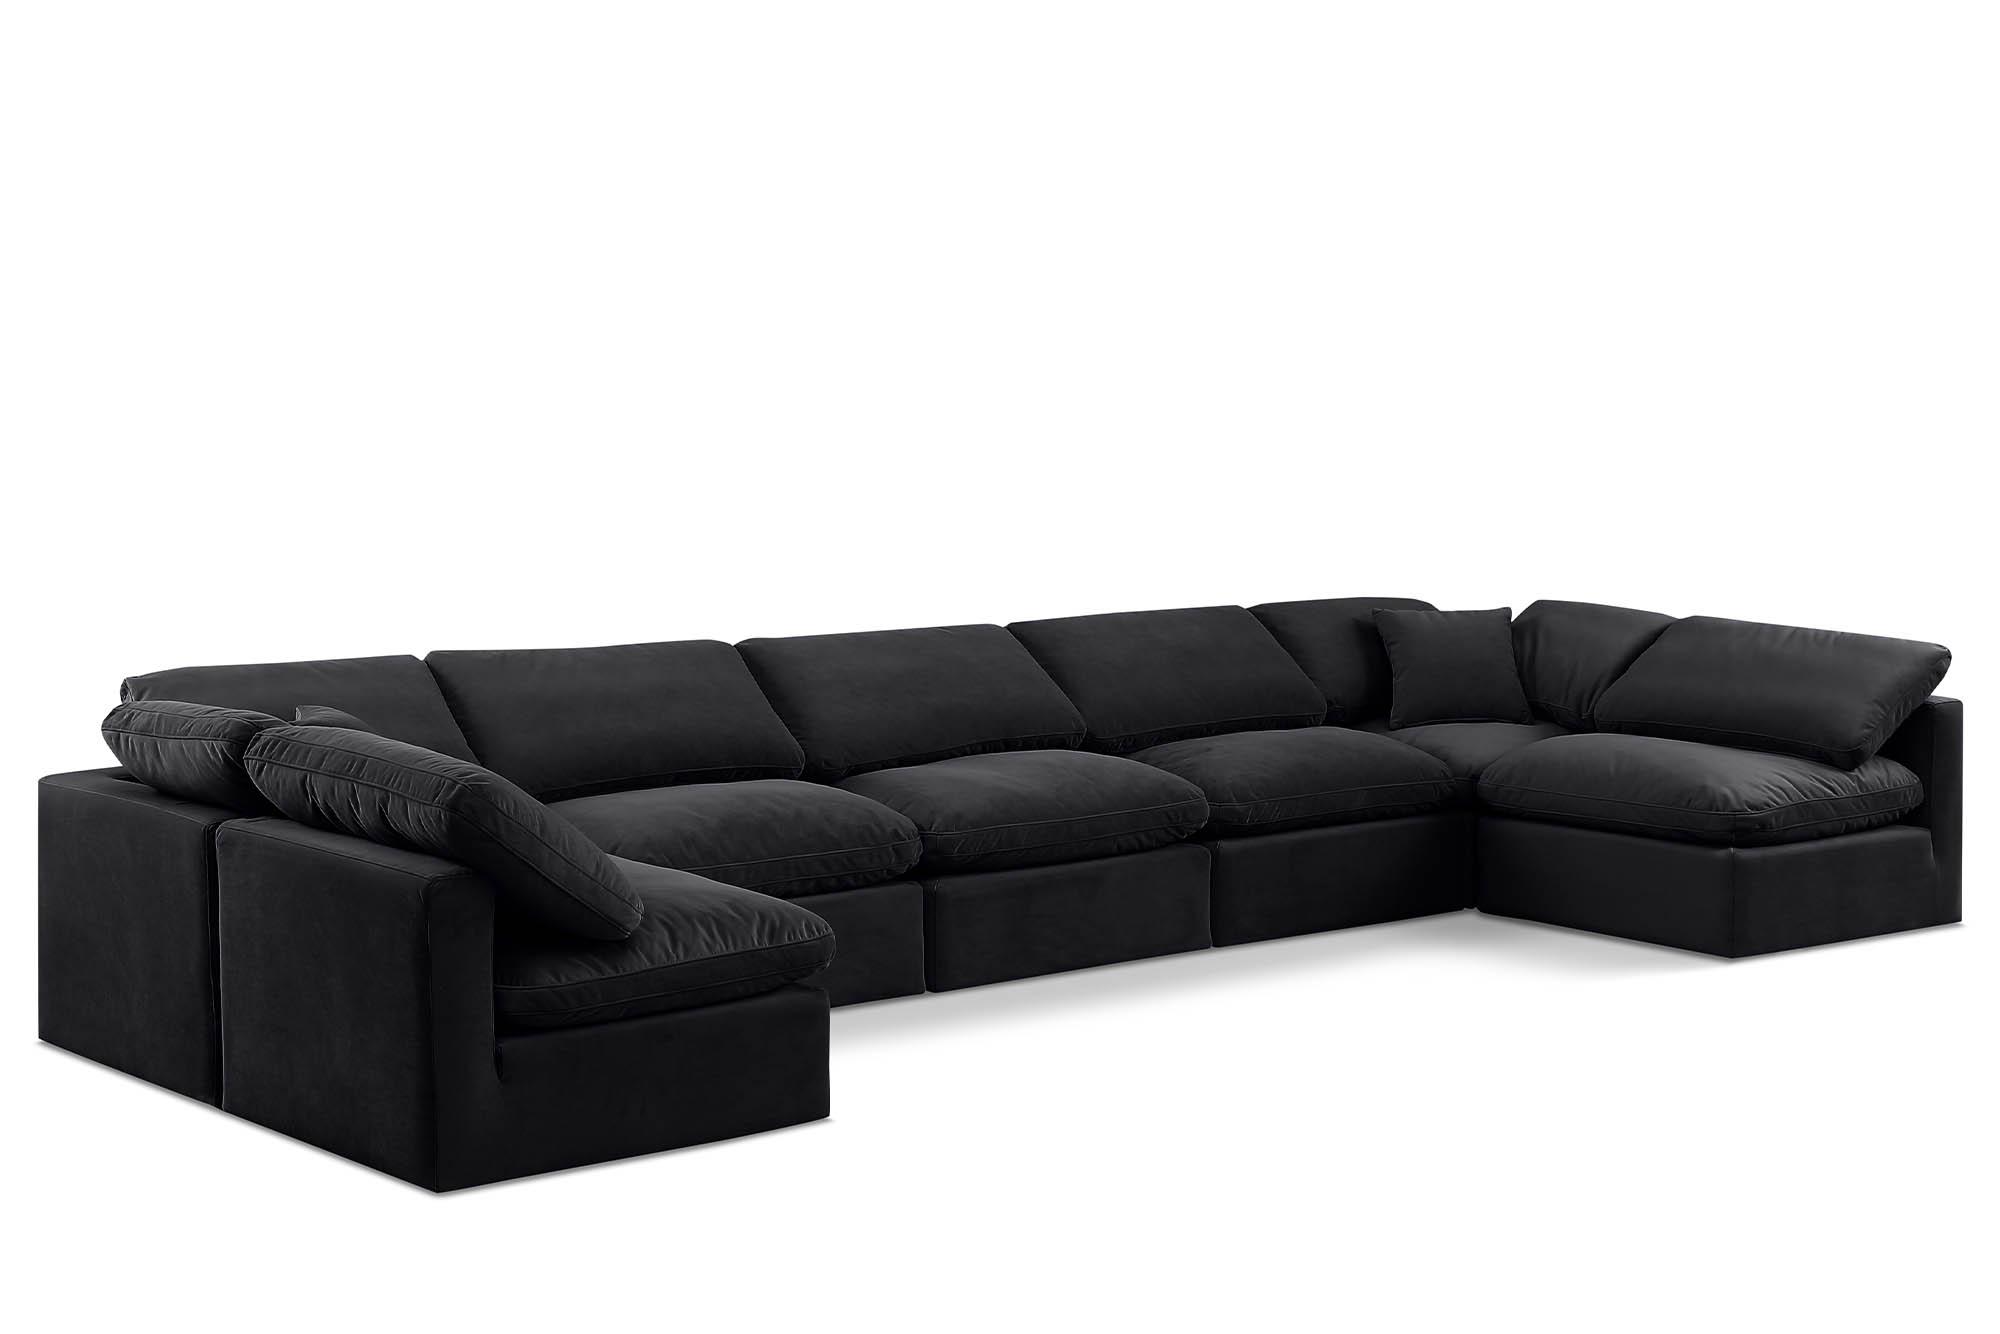 Contemporary, Modern Modular Sectional Sofa INDULGE 147Black-Sec7B 147Black-Sec7B in Black Velvet